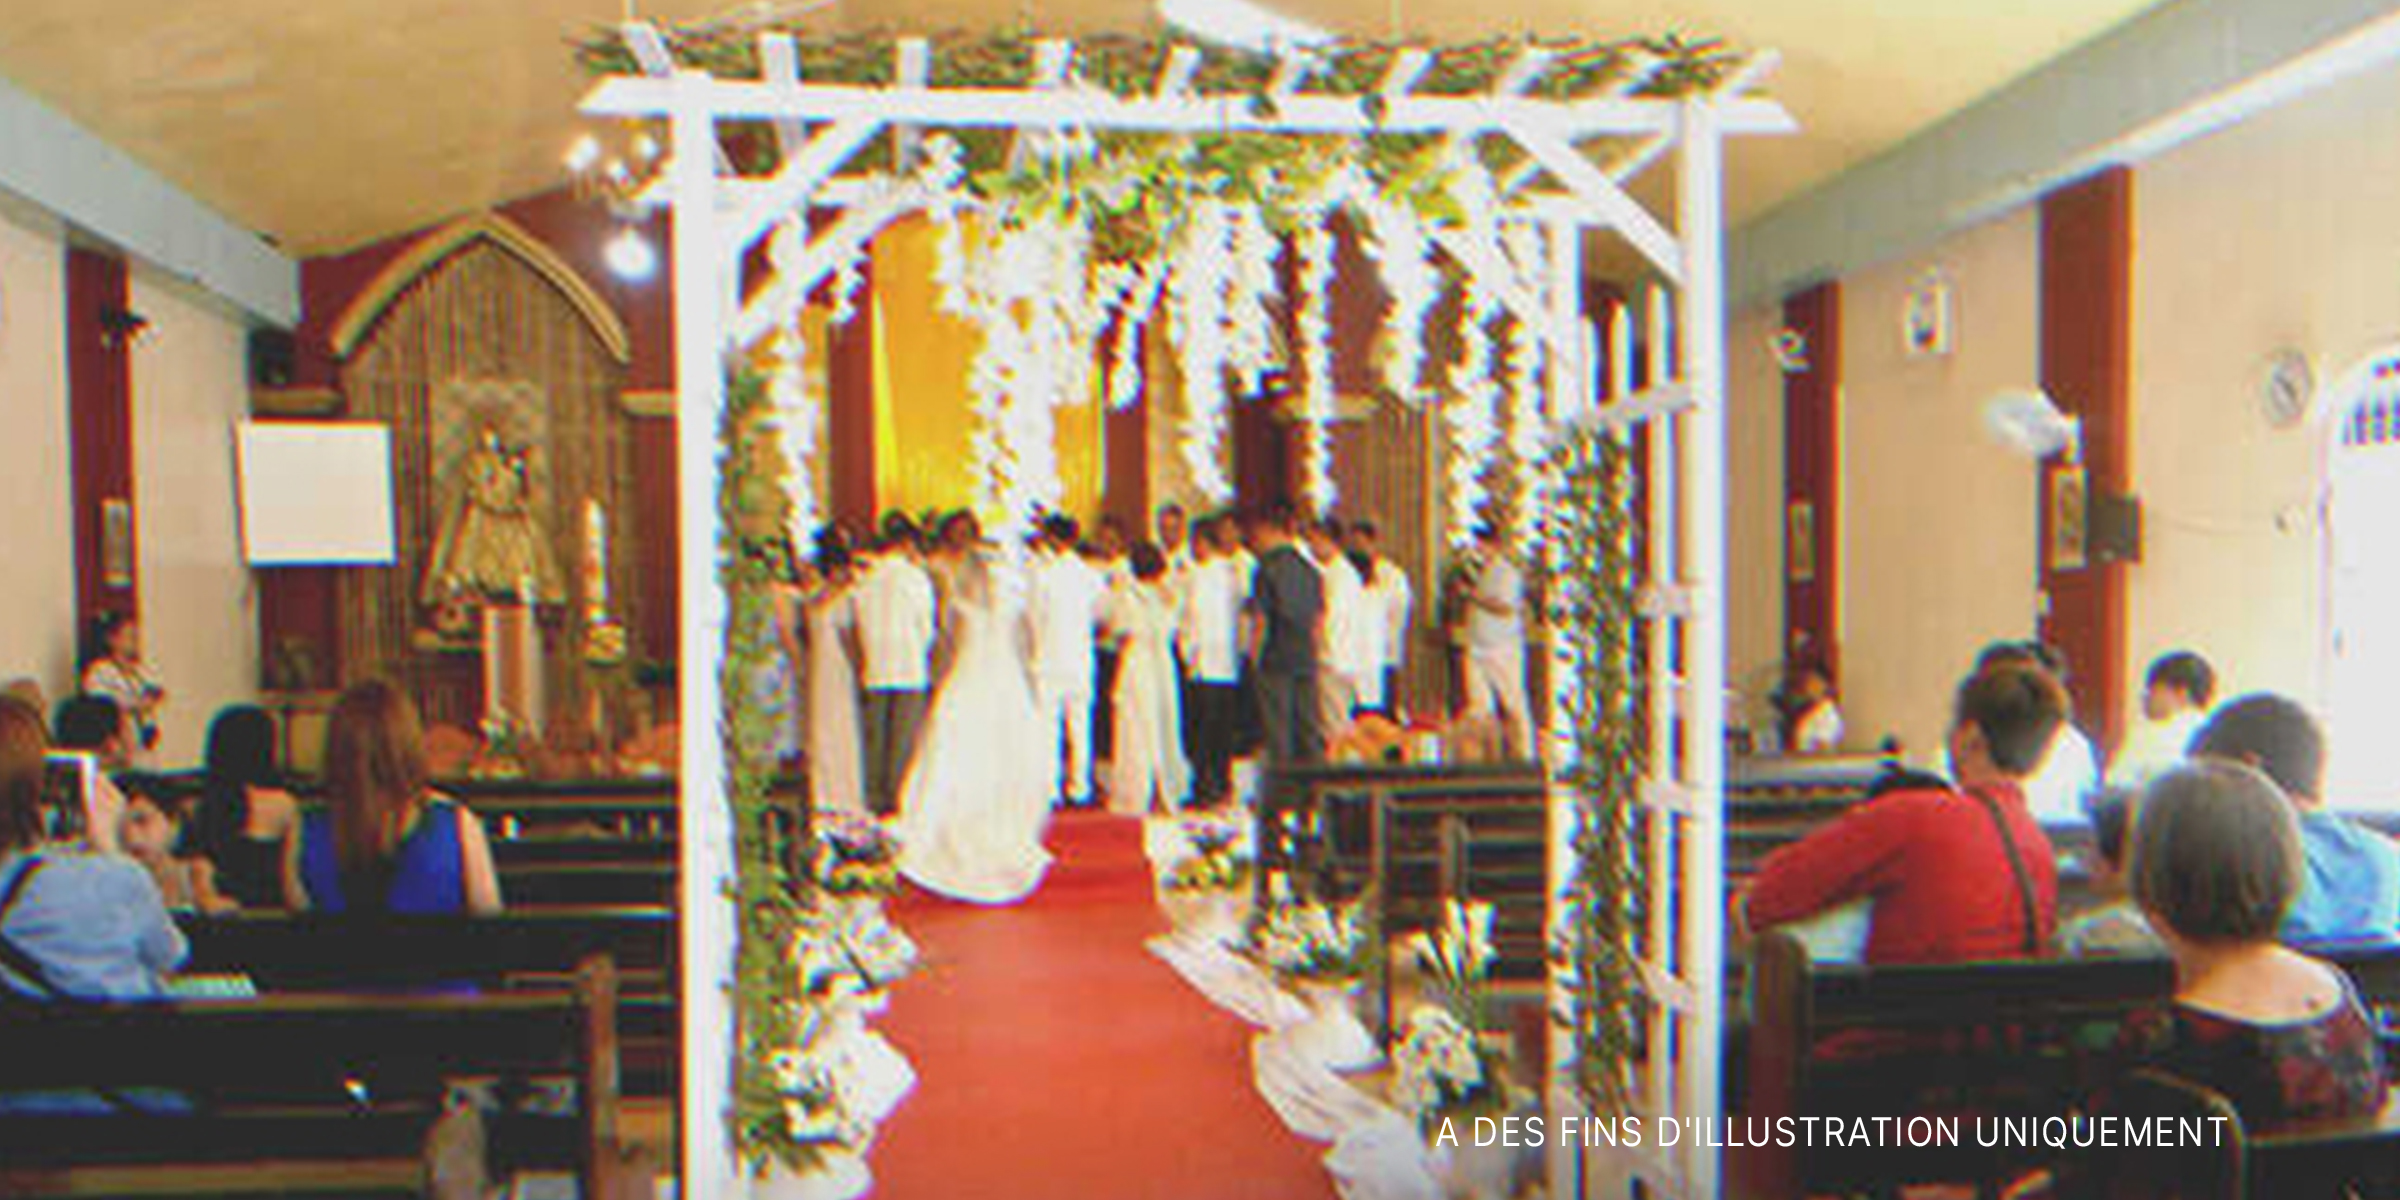 Une cérémonie de mariage | Source : Shutterstock